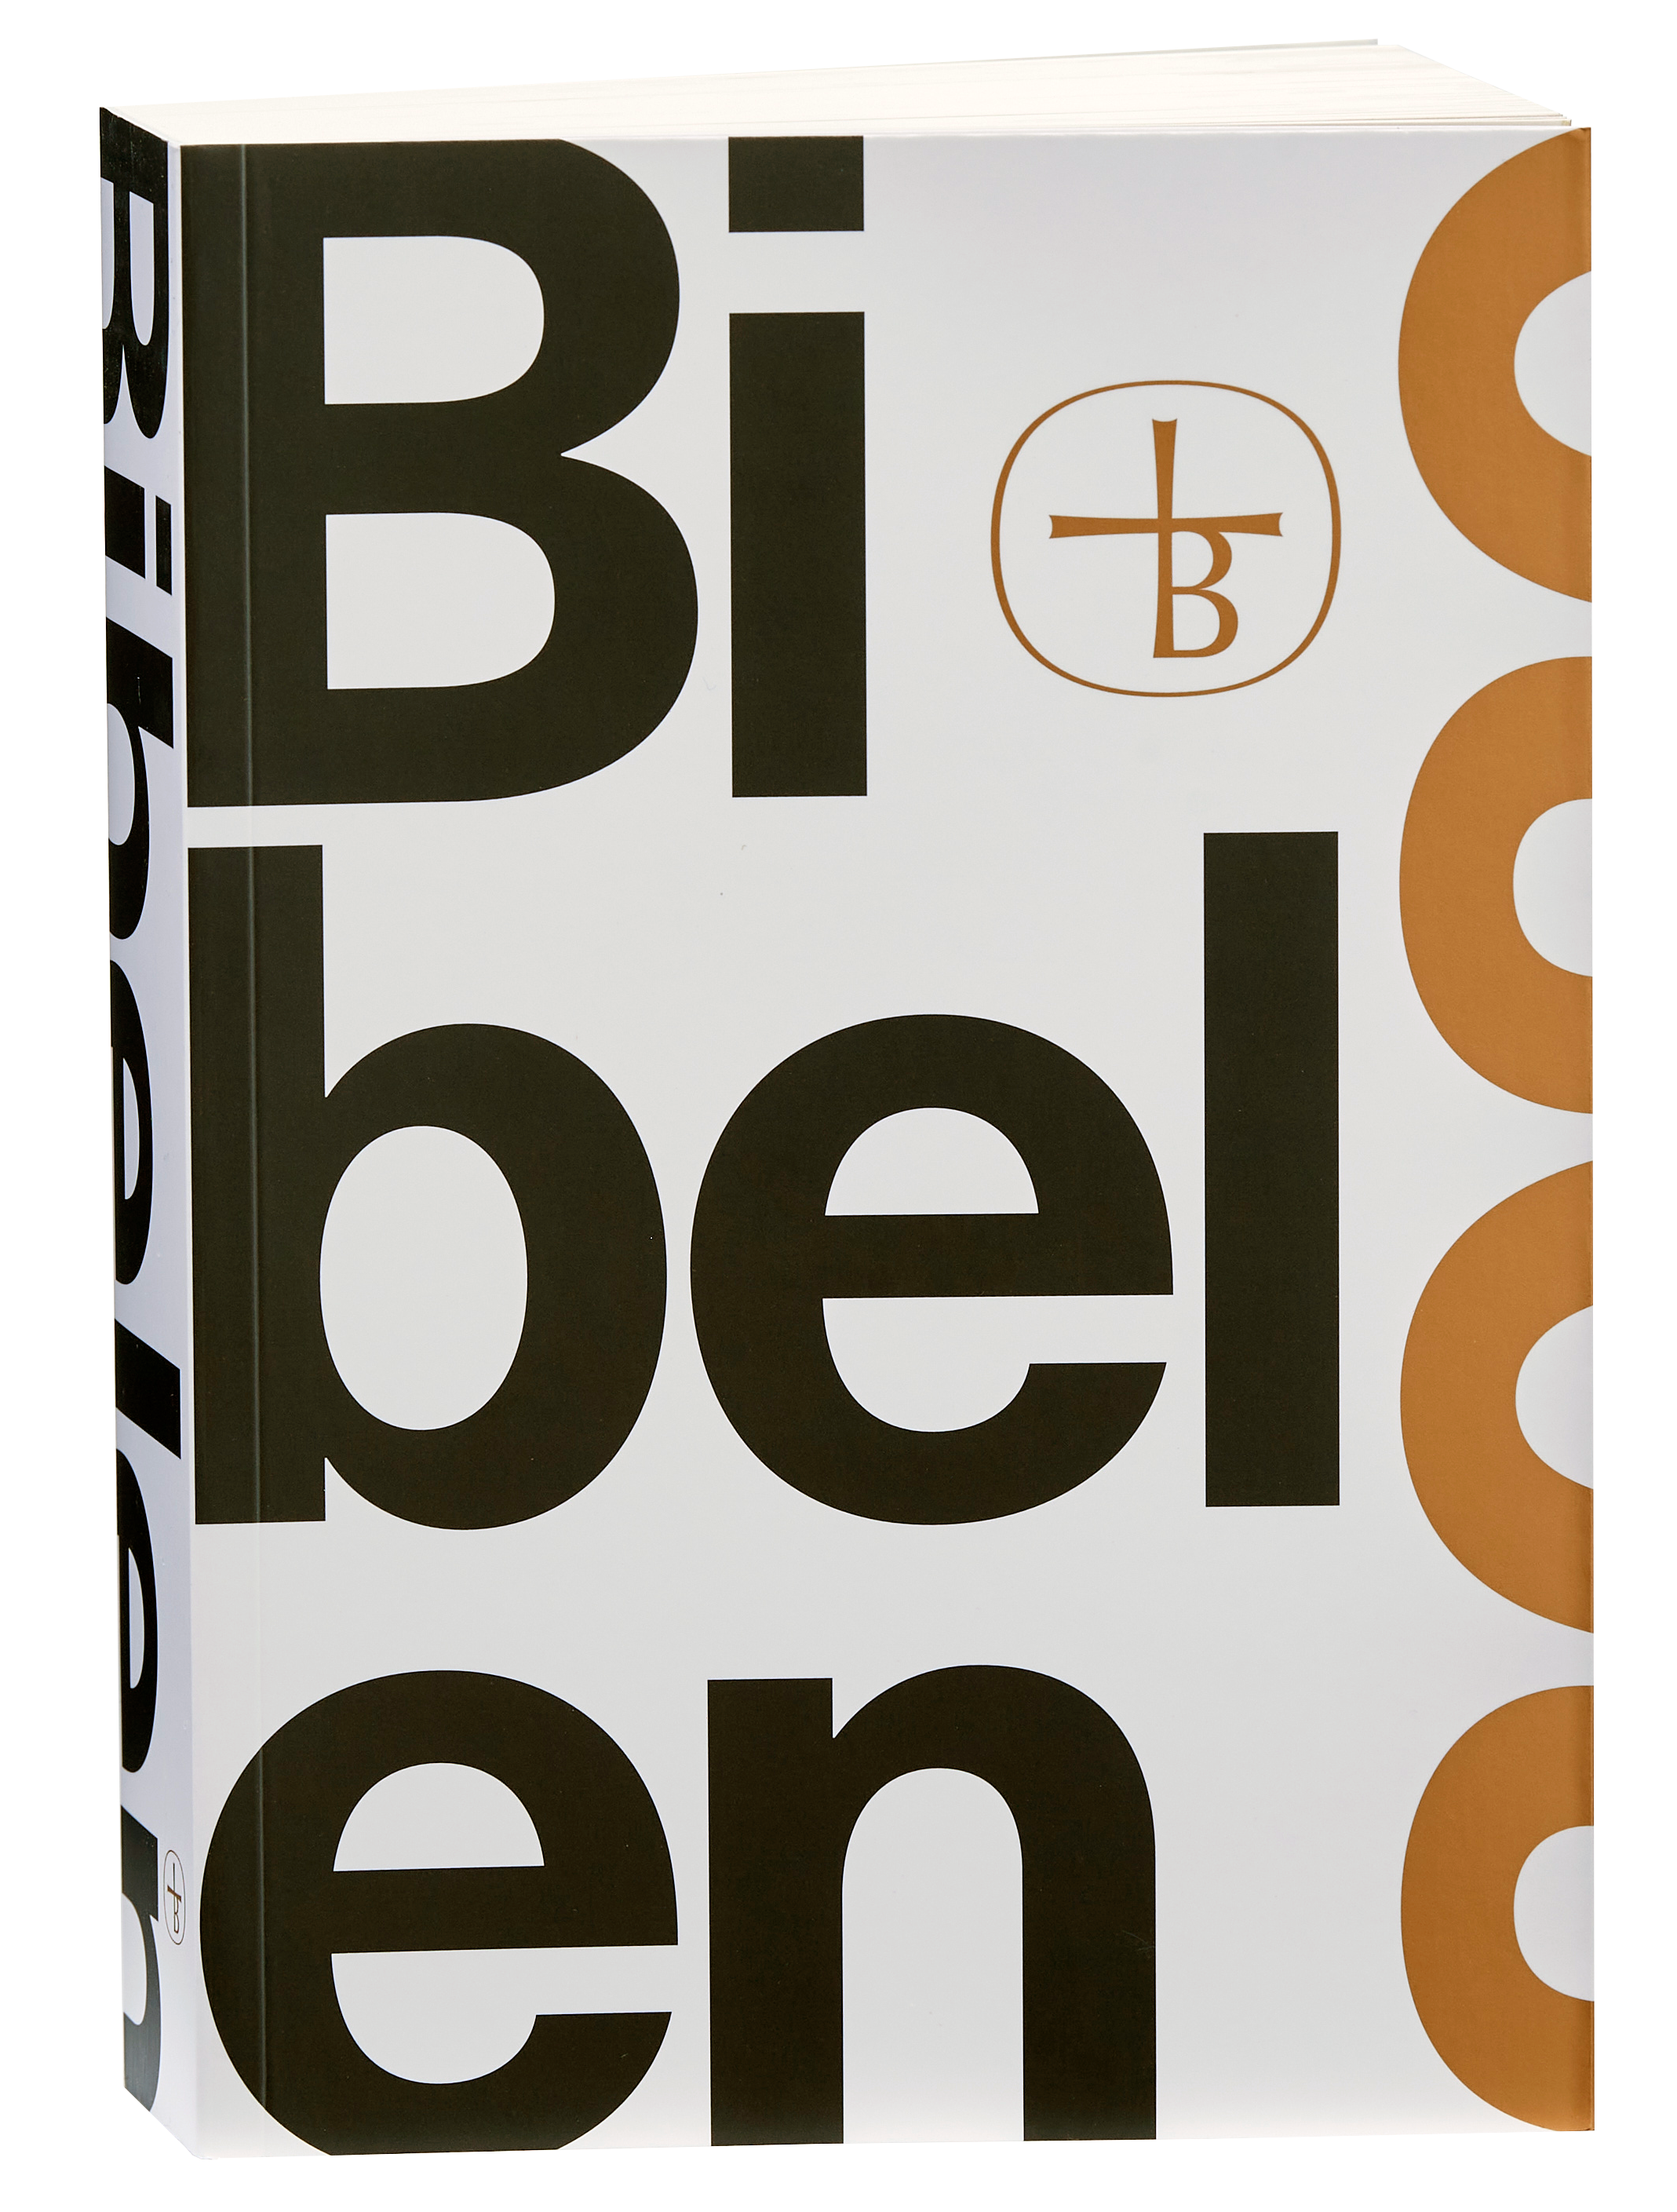 Bibelen 2020. Foto: Carsten Lundager.